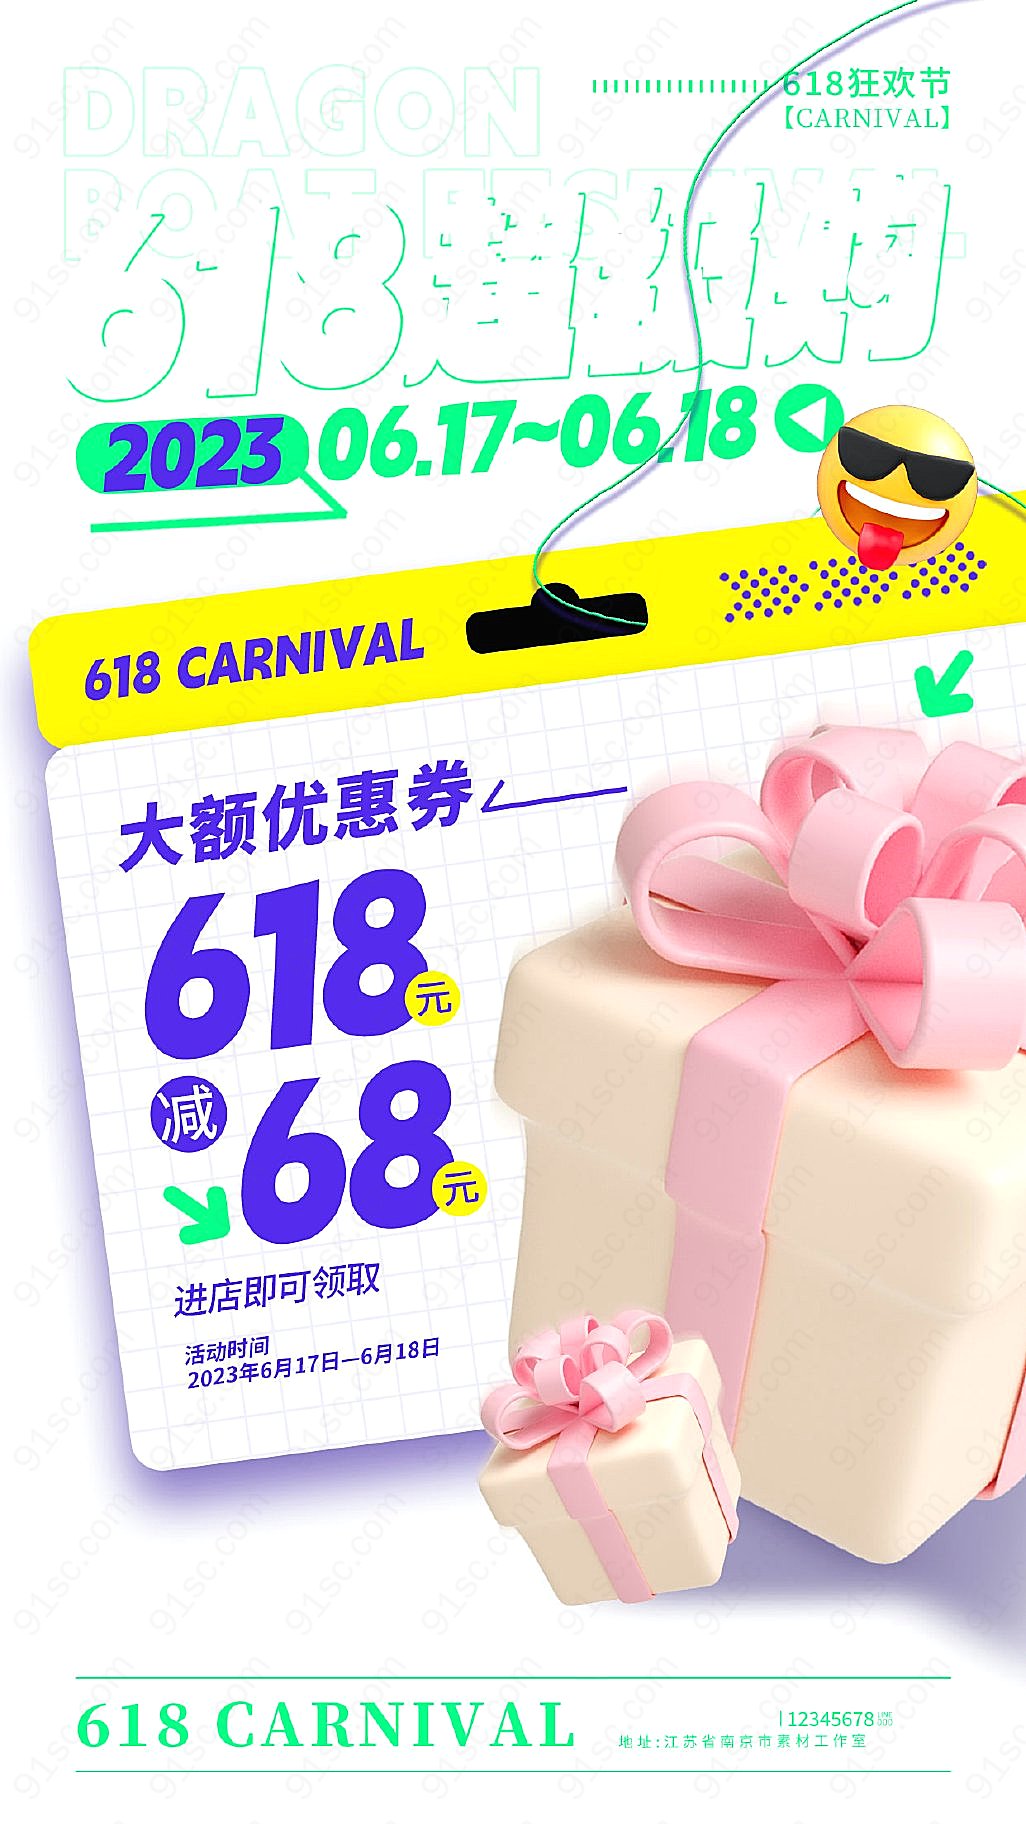 蓝色酷炫3D风618特惠手机宣传海报新媒体用图下载